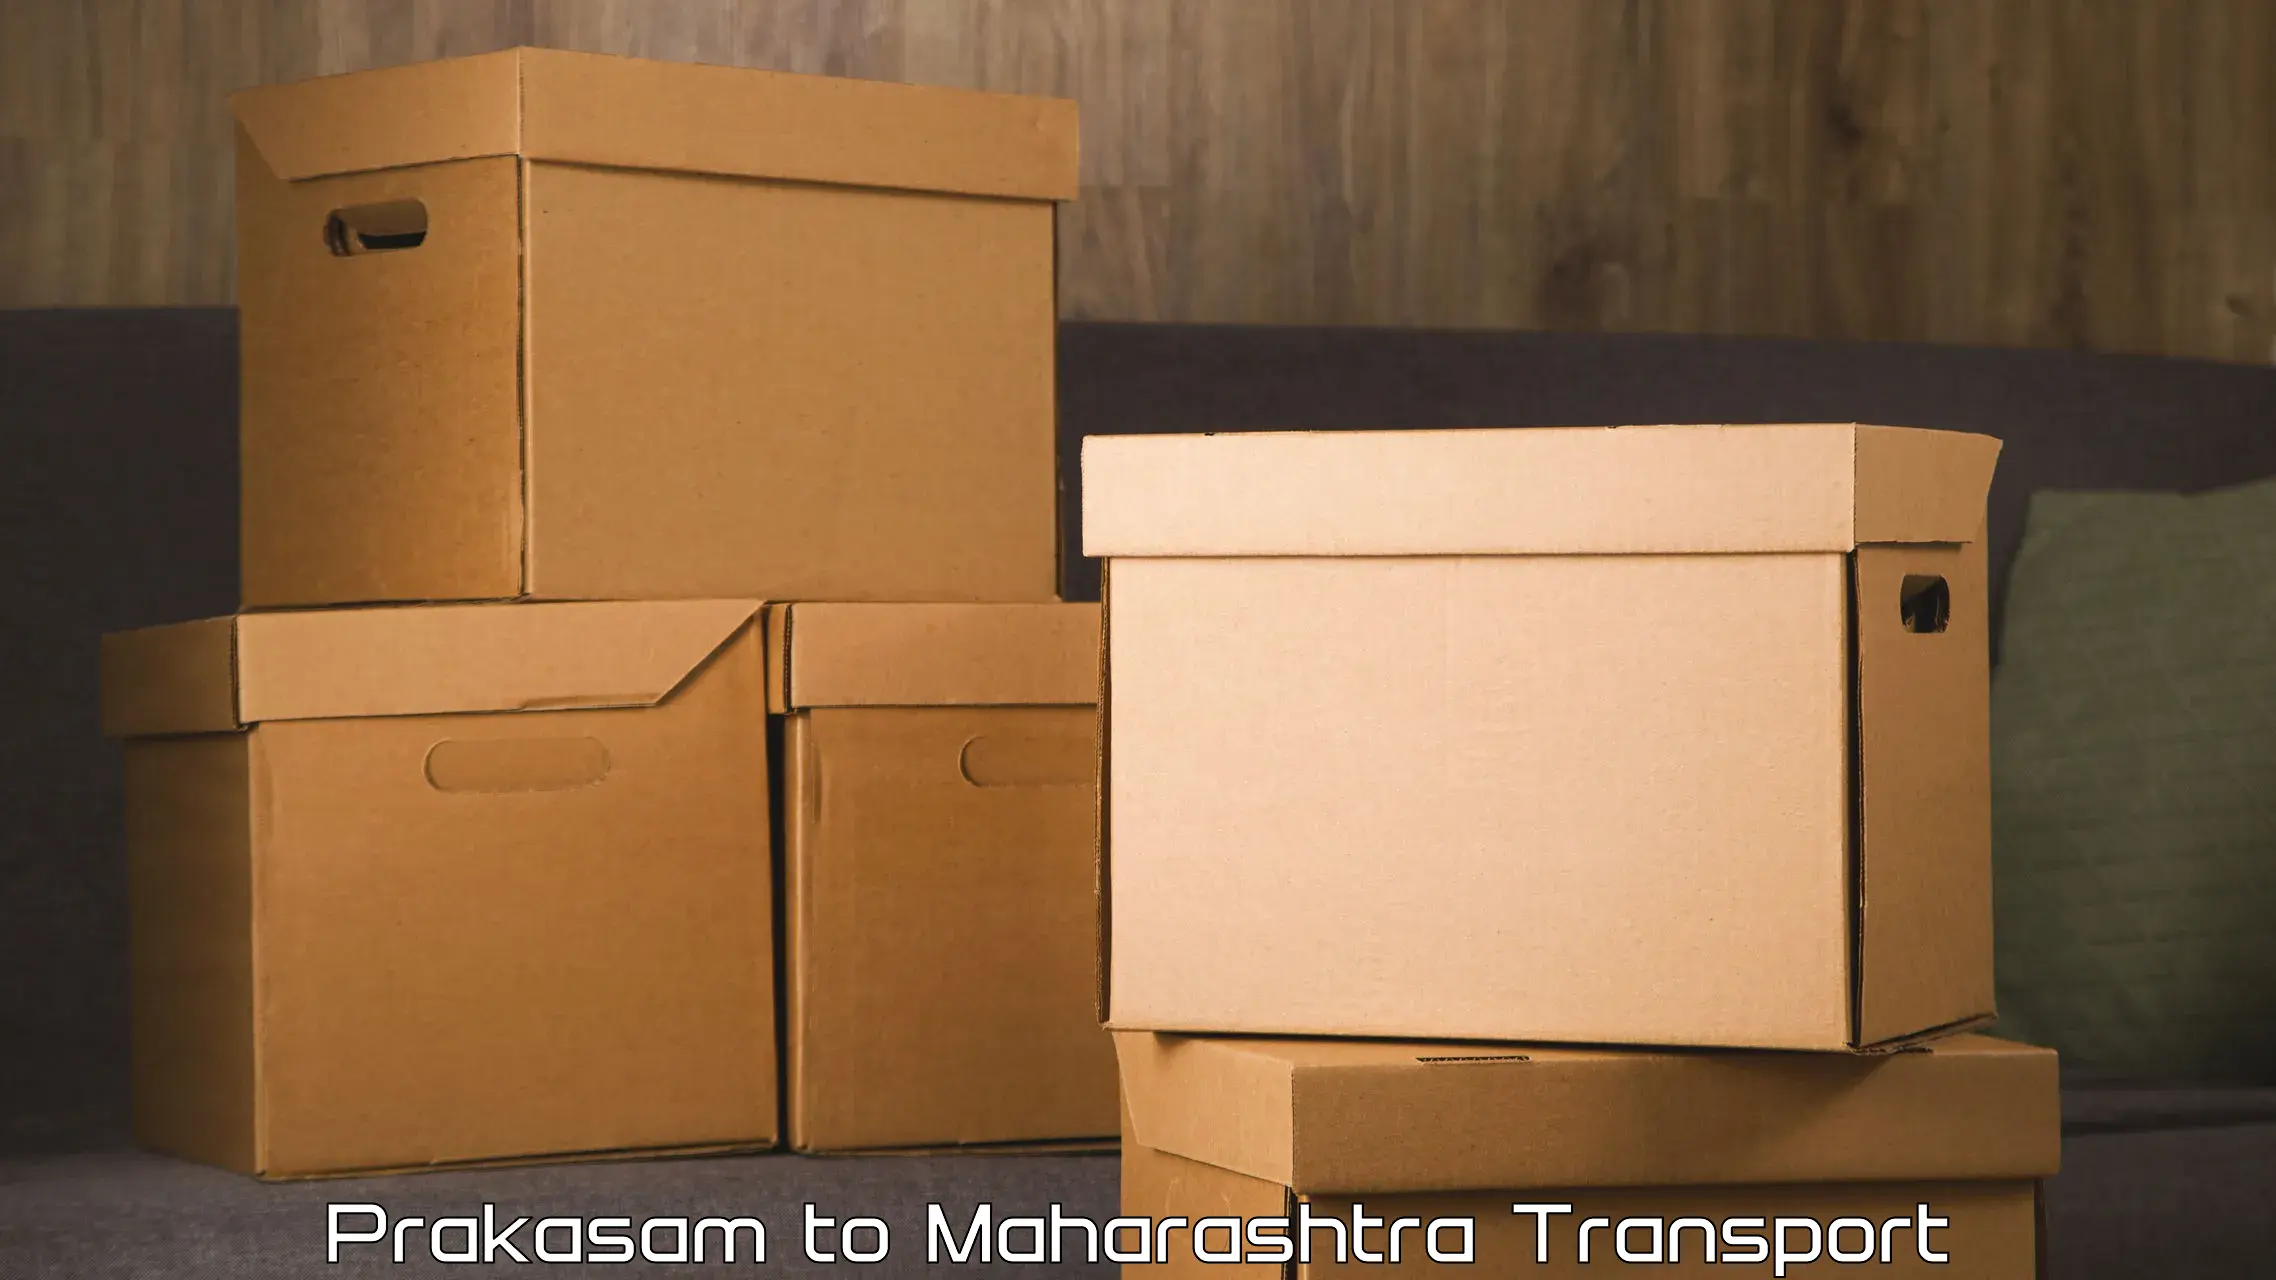 Container transport service Prakasam to Ulhasnagar